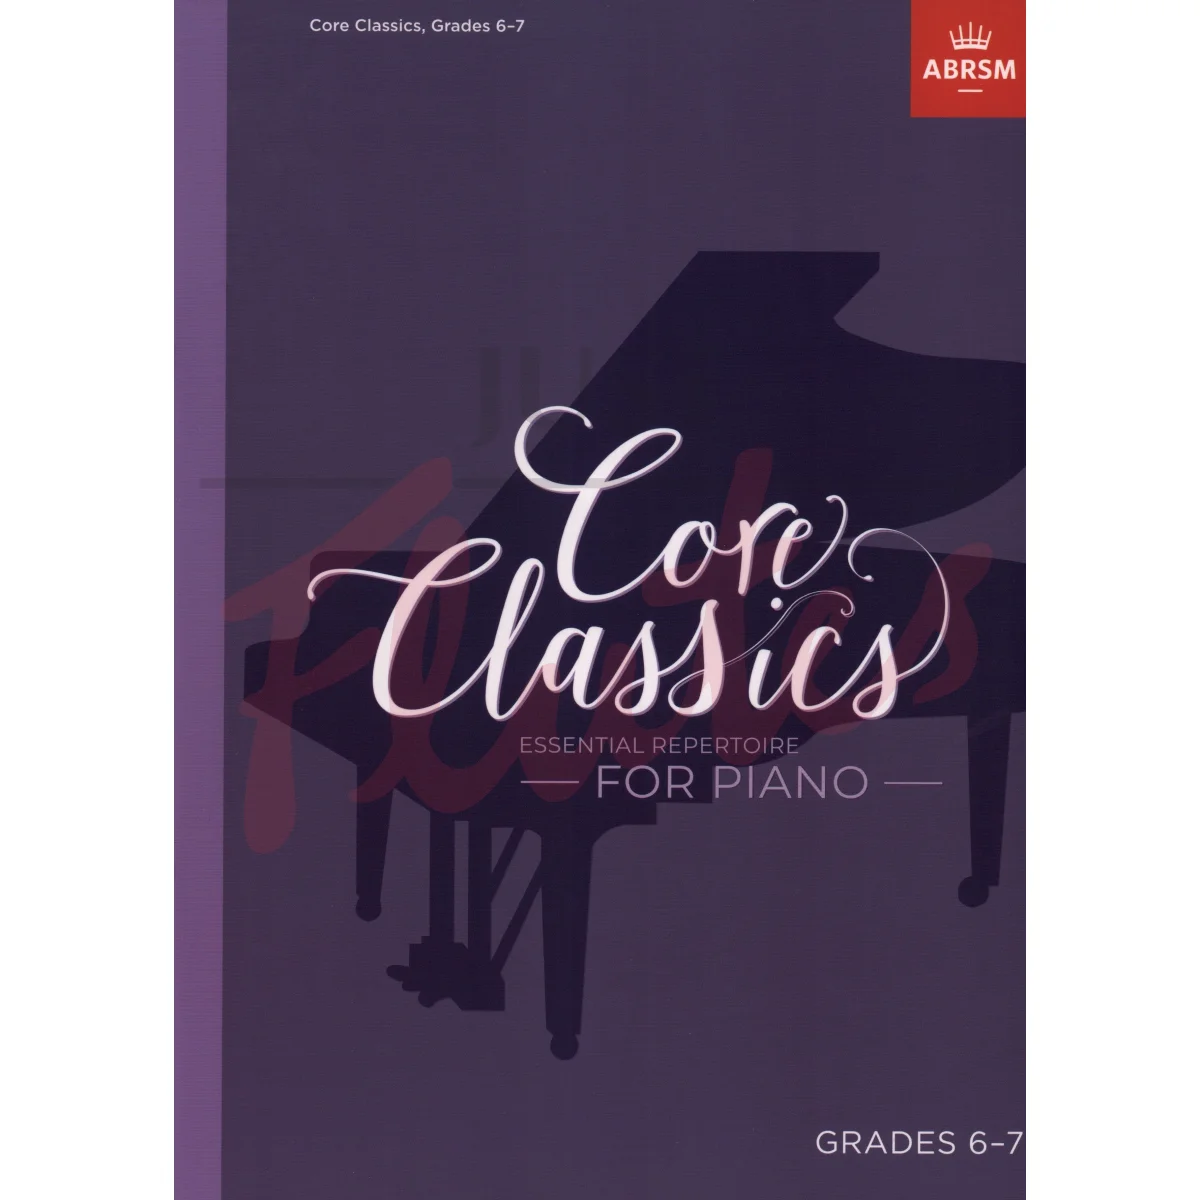 Core Classics Grades 6-7 Essential Repertoire for Piano